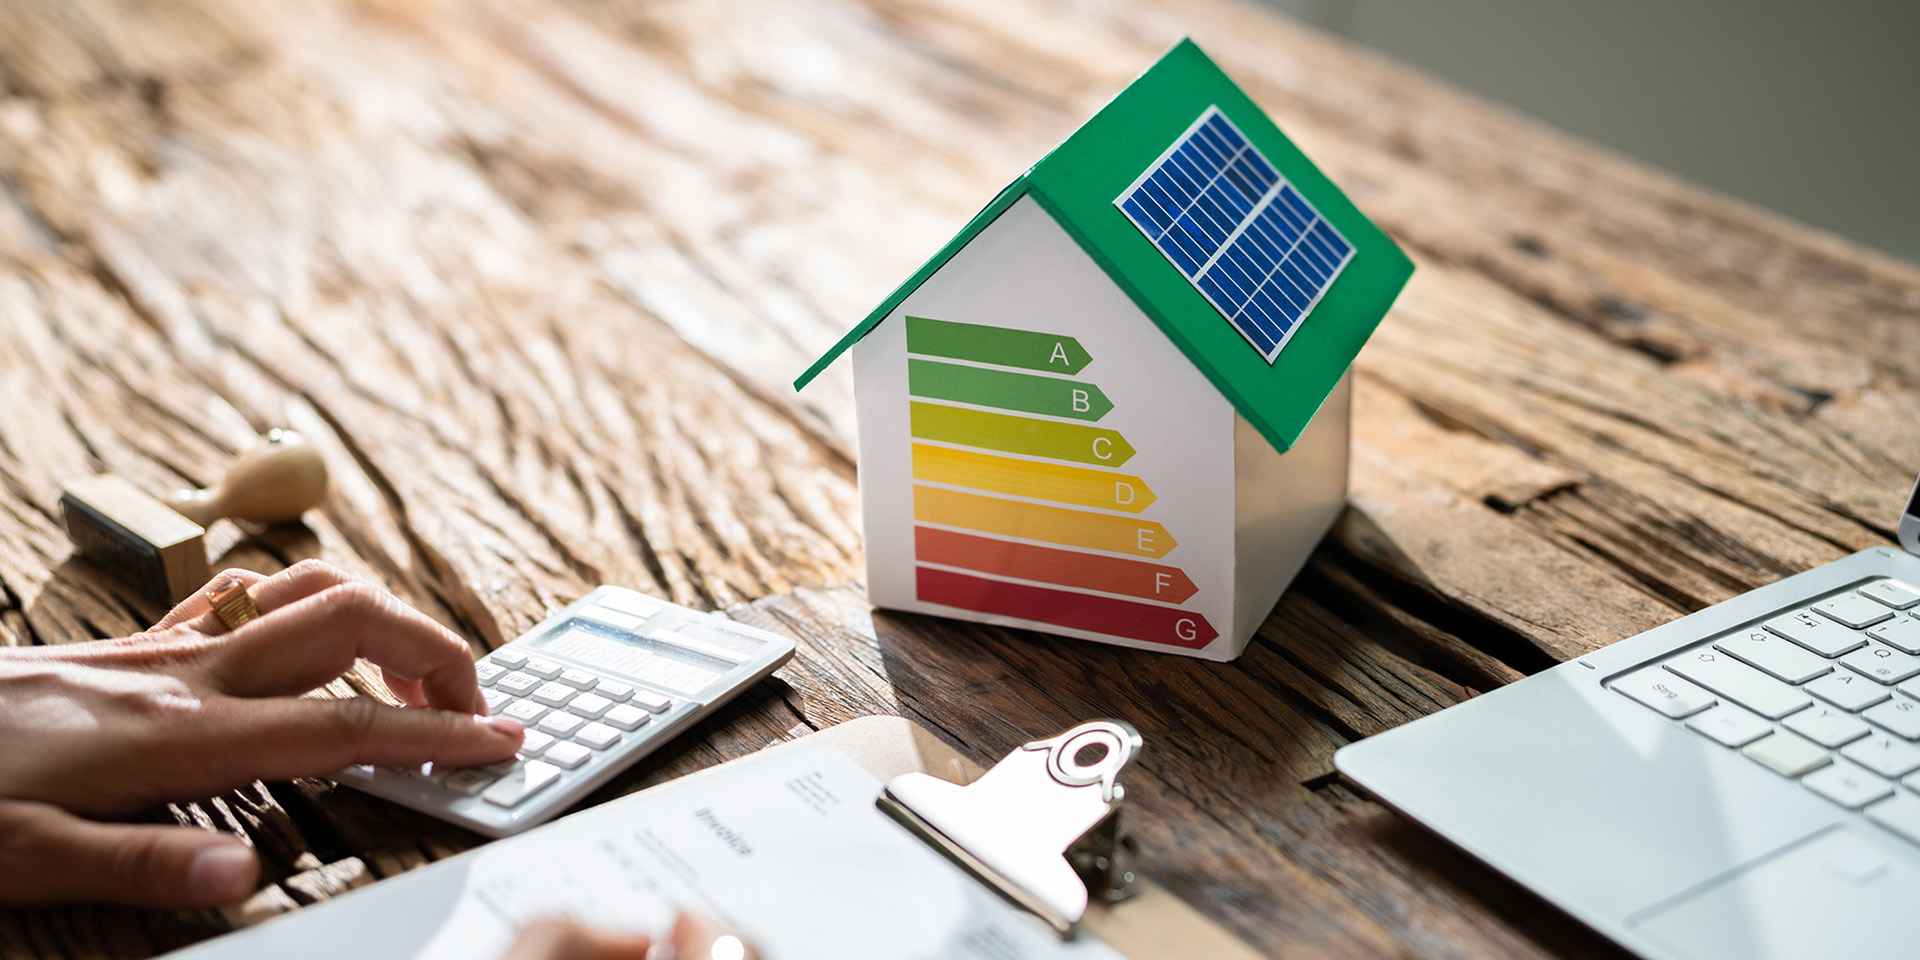 Come costruire una casa a risparmio energetico